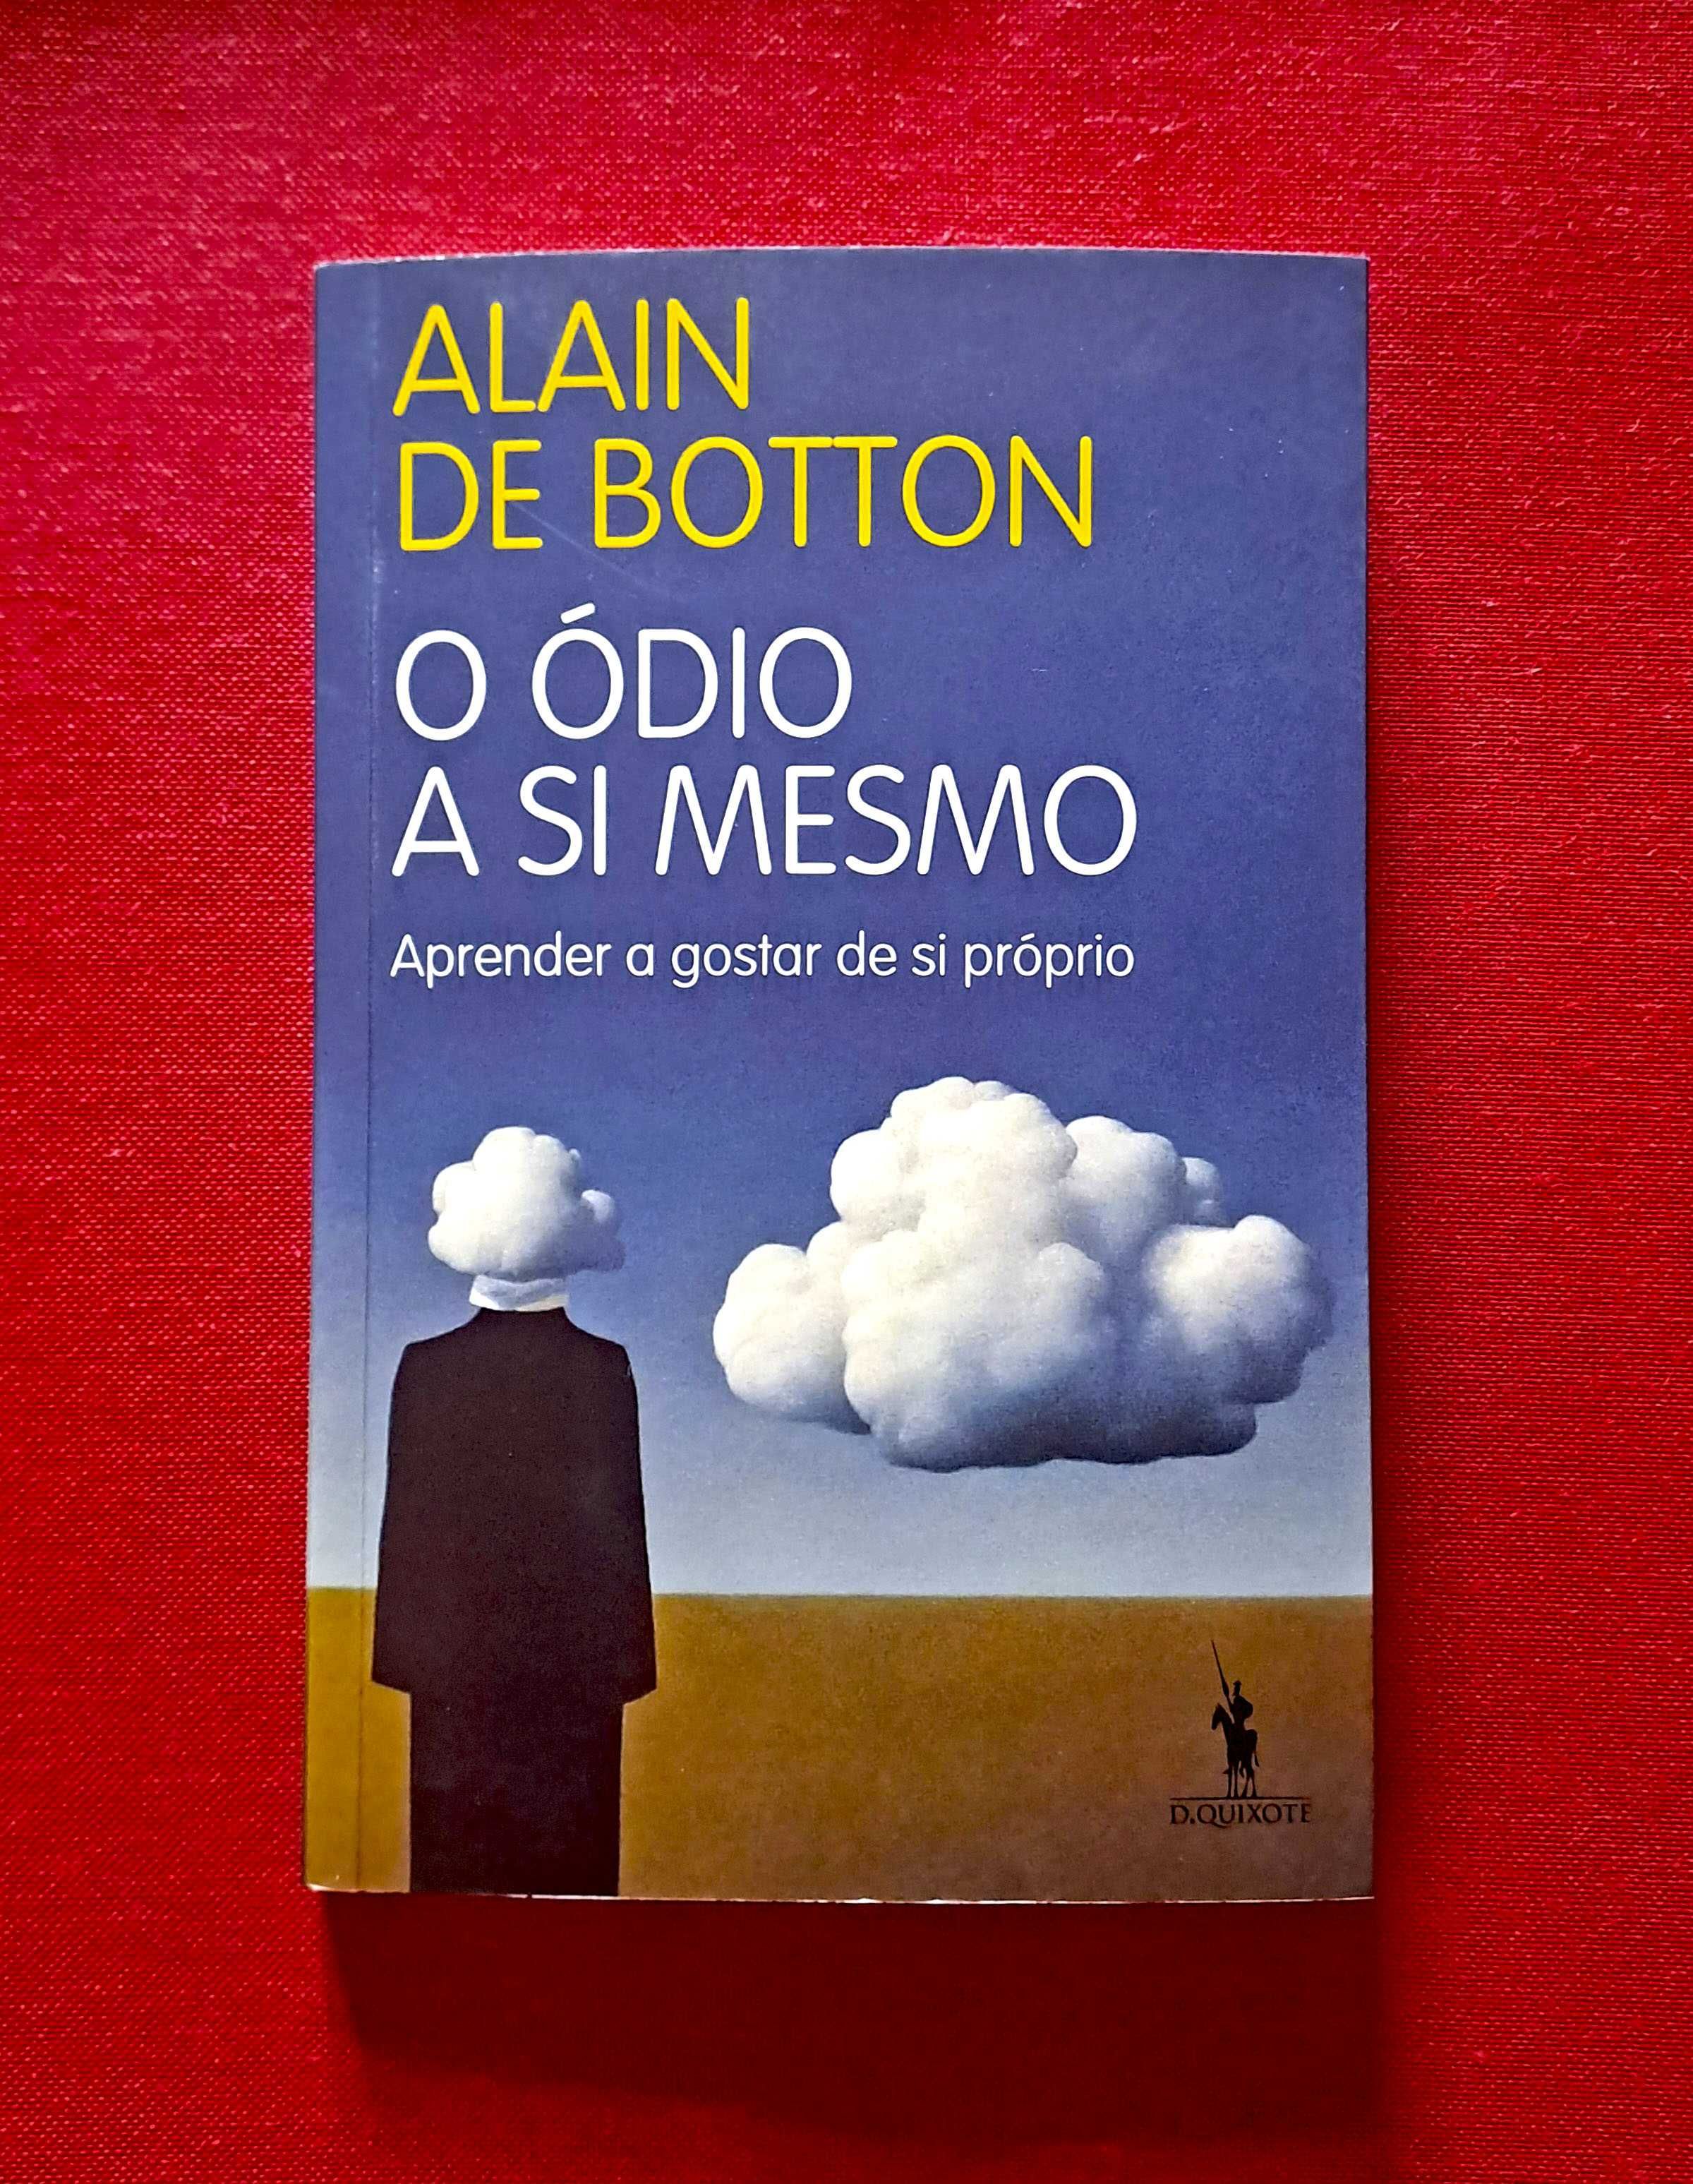 O Ódio a Si Mesmo: Aprender a gostar de si próprio - Alain de Botton